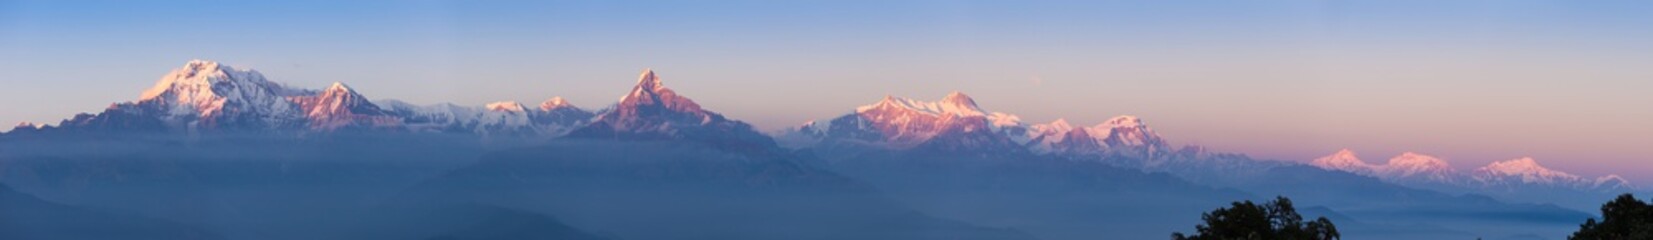 Annapurna panorama - 270616585